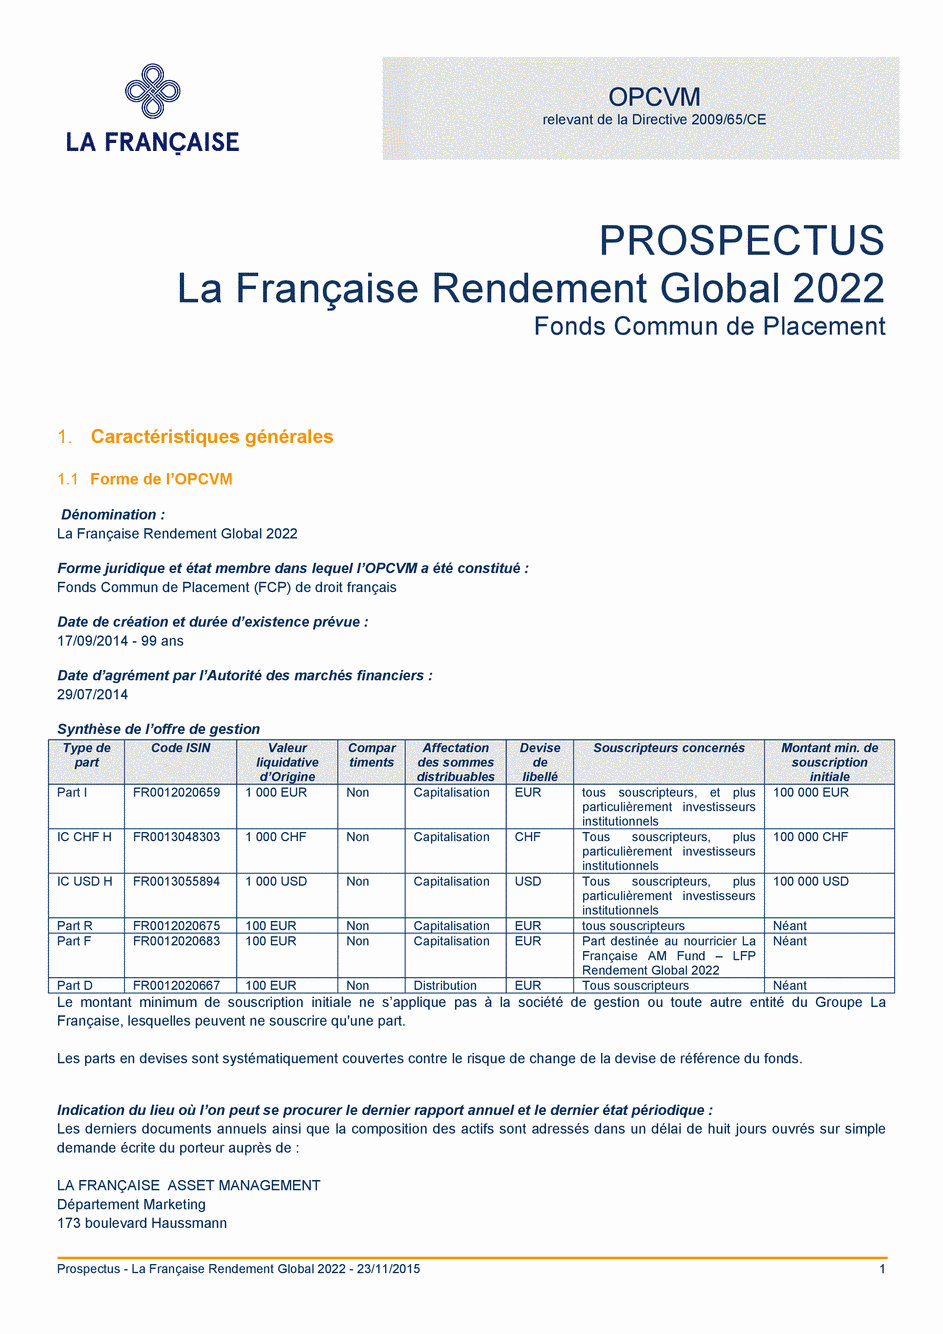 Prospectus La Française Rendement Global 2022 - Part F - 09/11/2015 - Français